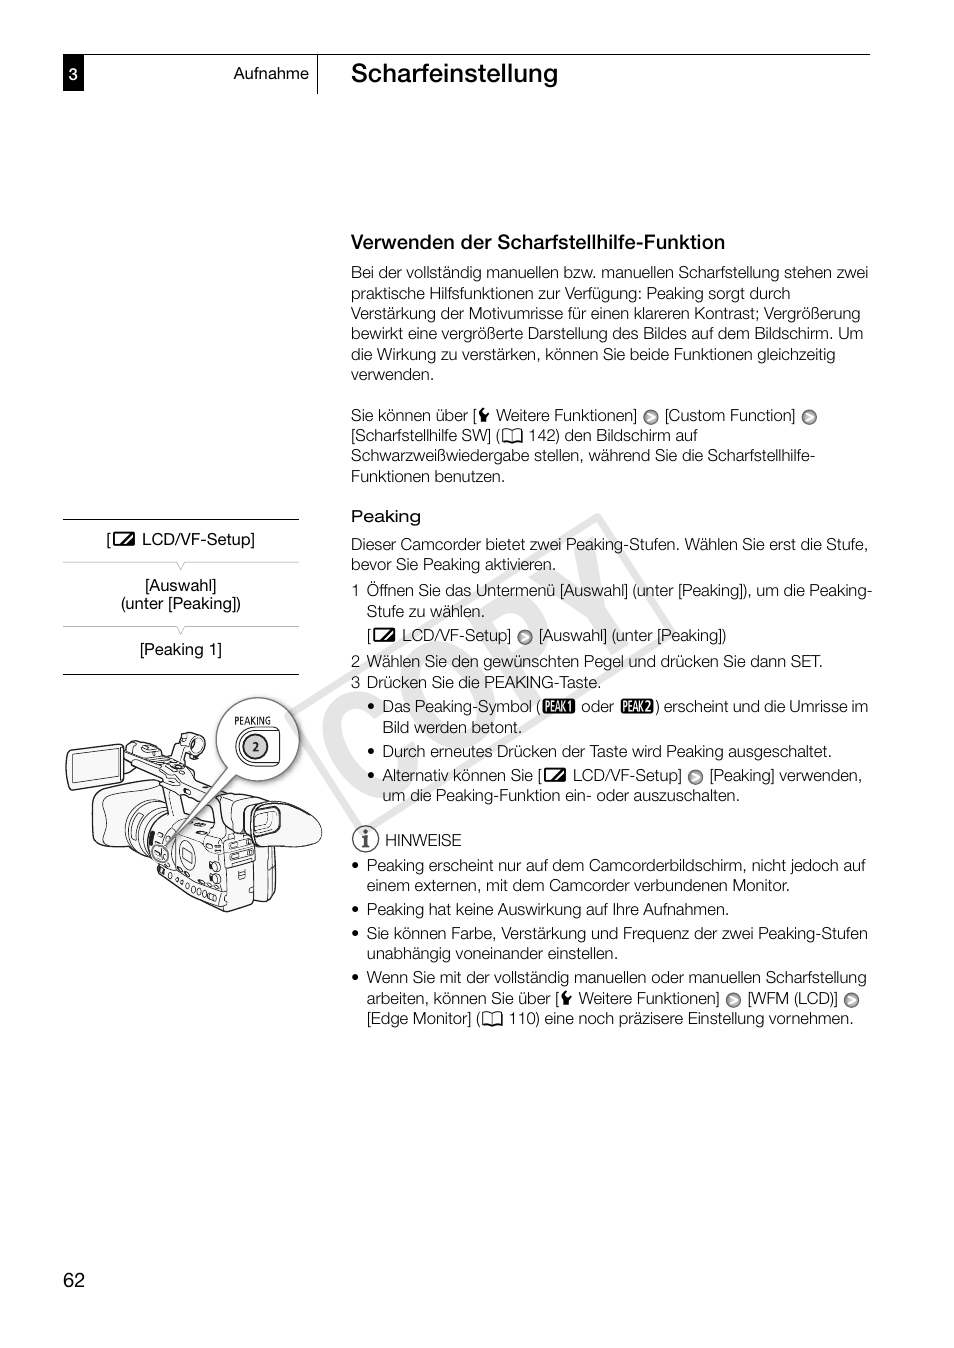 Verwenden der scharfstellhilfe-funktion, Verwenden der scharfstellhilfe-funktion 62, Cop y | Canon XF300 Benutzerhandbuch | Seite 62 / 230